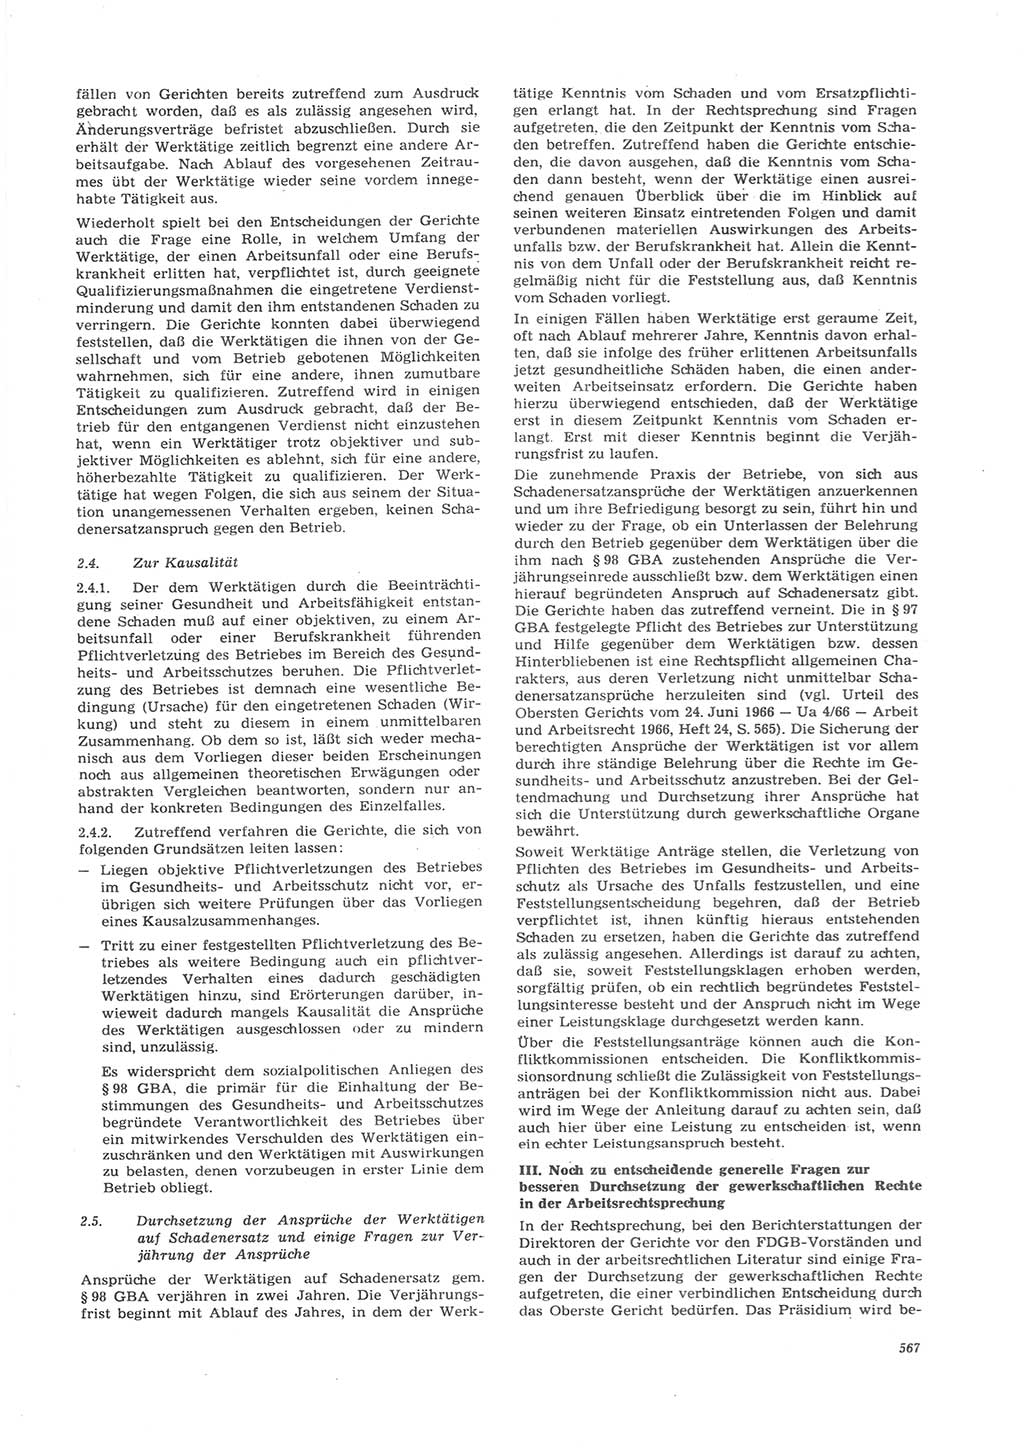 Neue Justiz (NJ), Zeitschrift für Recht und Rechtswissenschaft [Deutsche Demokratische Republik (DDR)], 26. Jahrgang 1972, Seite 567 (NJ DDR 1972, S. 567)